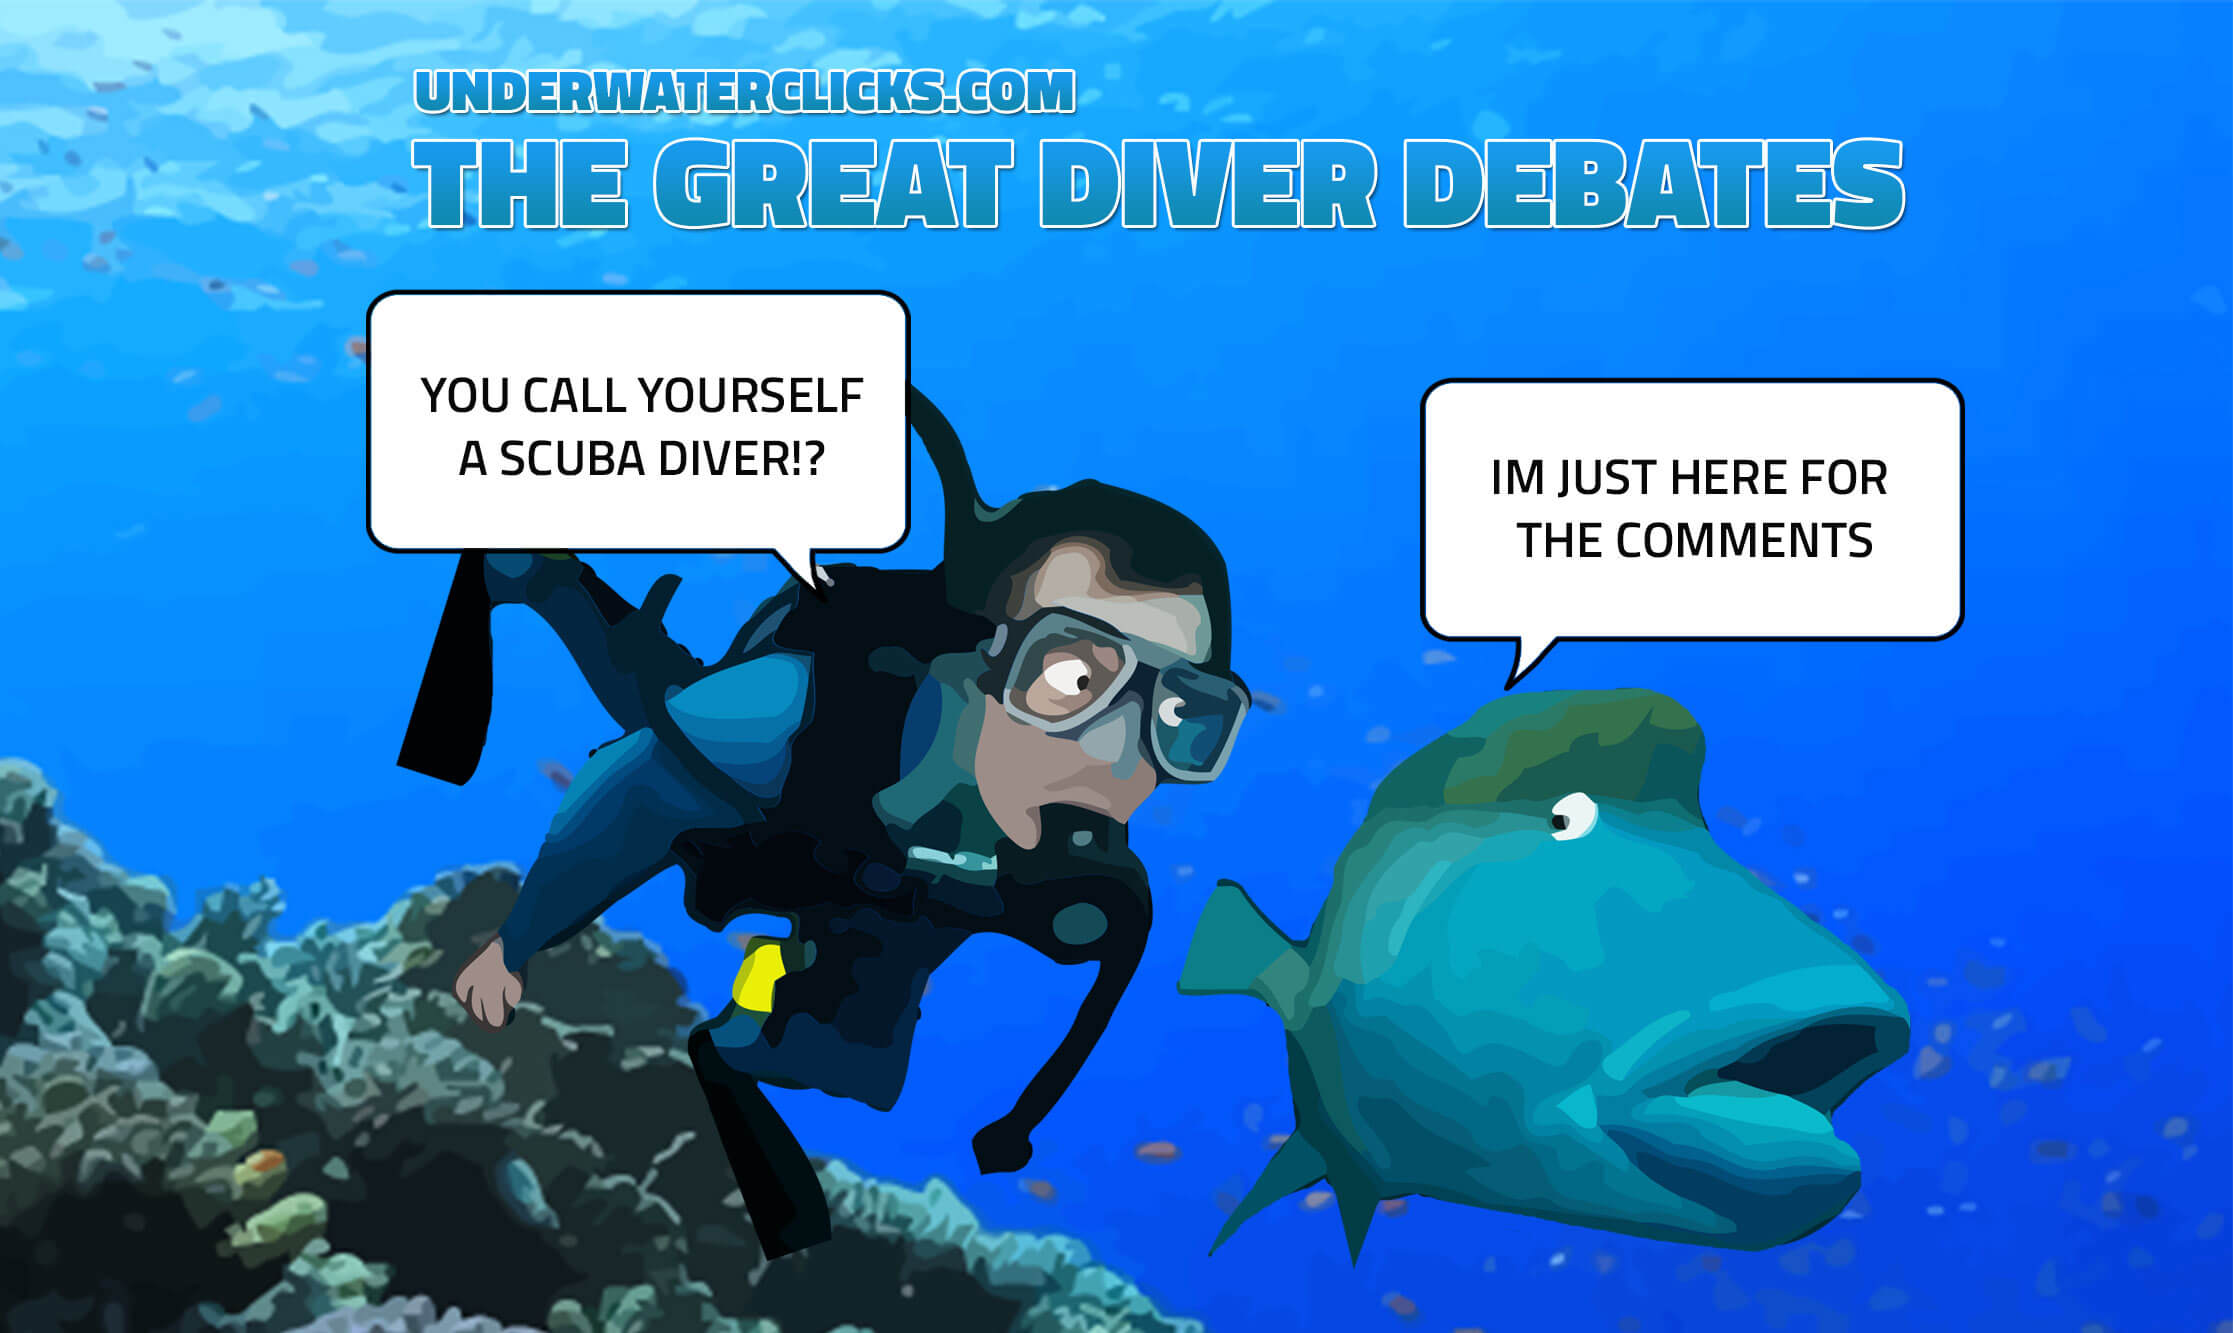 The Great Diver Debates